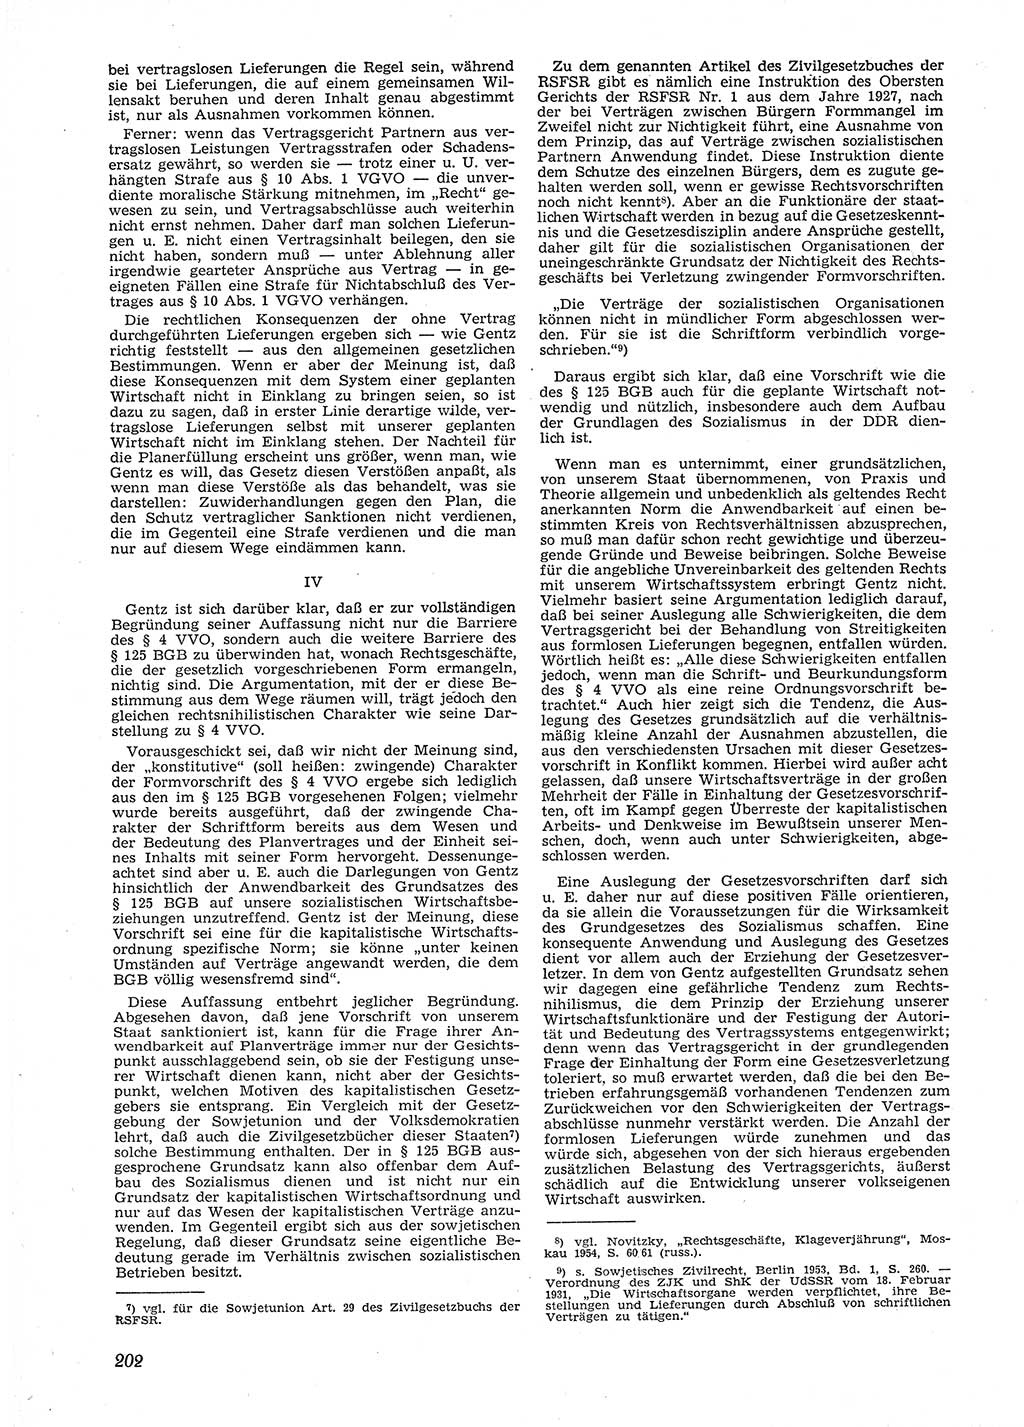 Neue Justiz (NJ), Zeitschrift für Recht und Rechtswissenschaft [Deutsche Demokratische Republik (DDR)], 9. Jahrgang 1955, Seite 202 (NJ DDR 1955, S. 202)